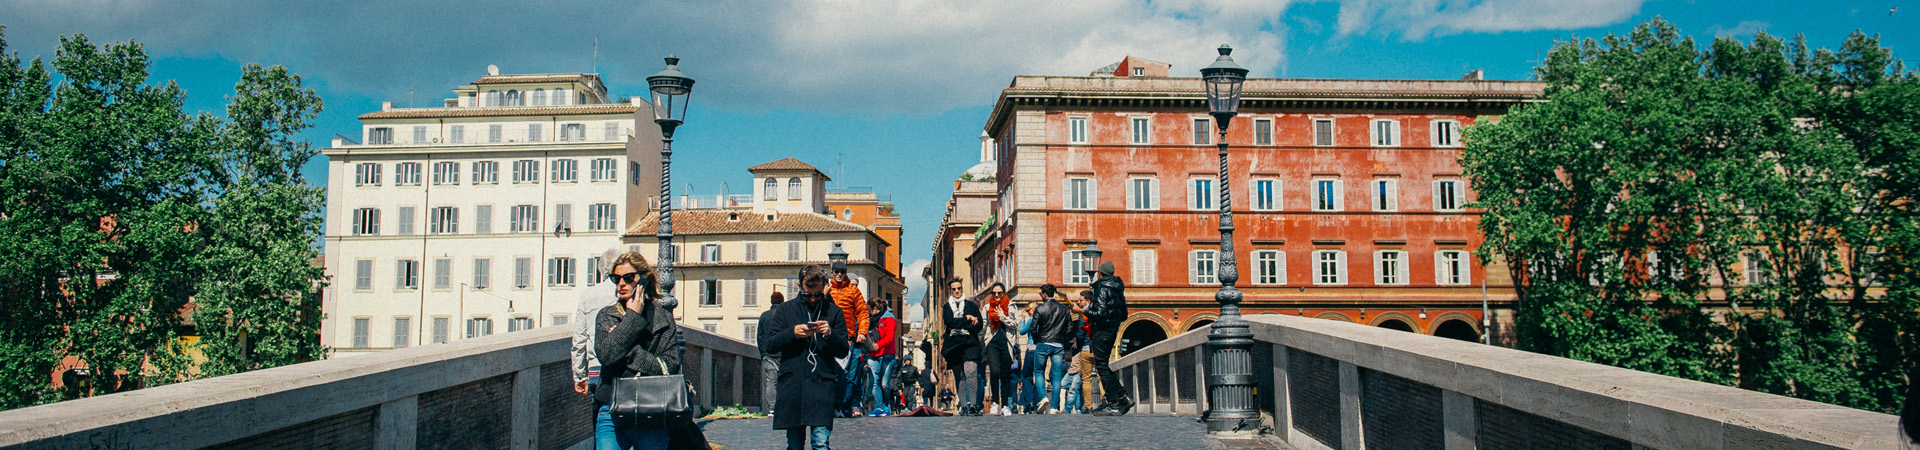 ODSAR Form | Residential Life | John Cabot University | Rome, Italy